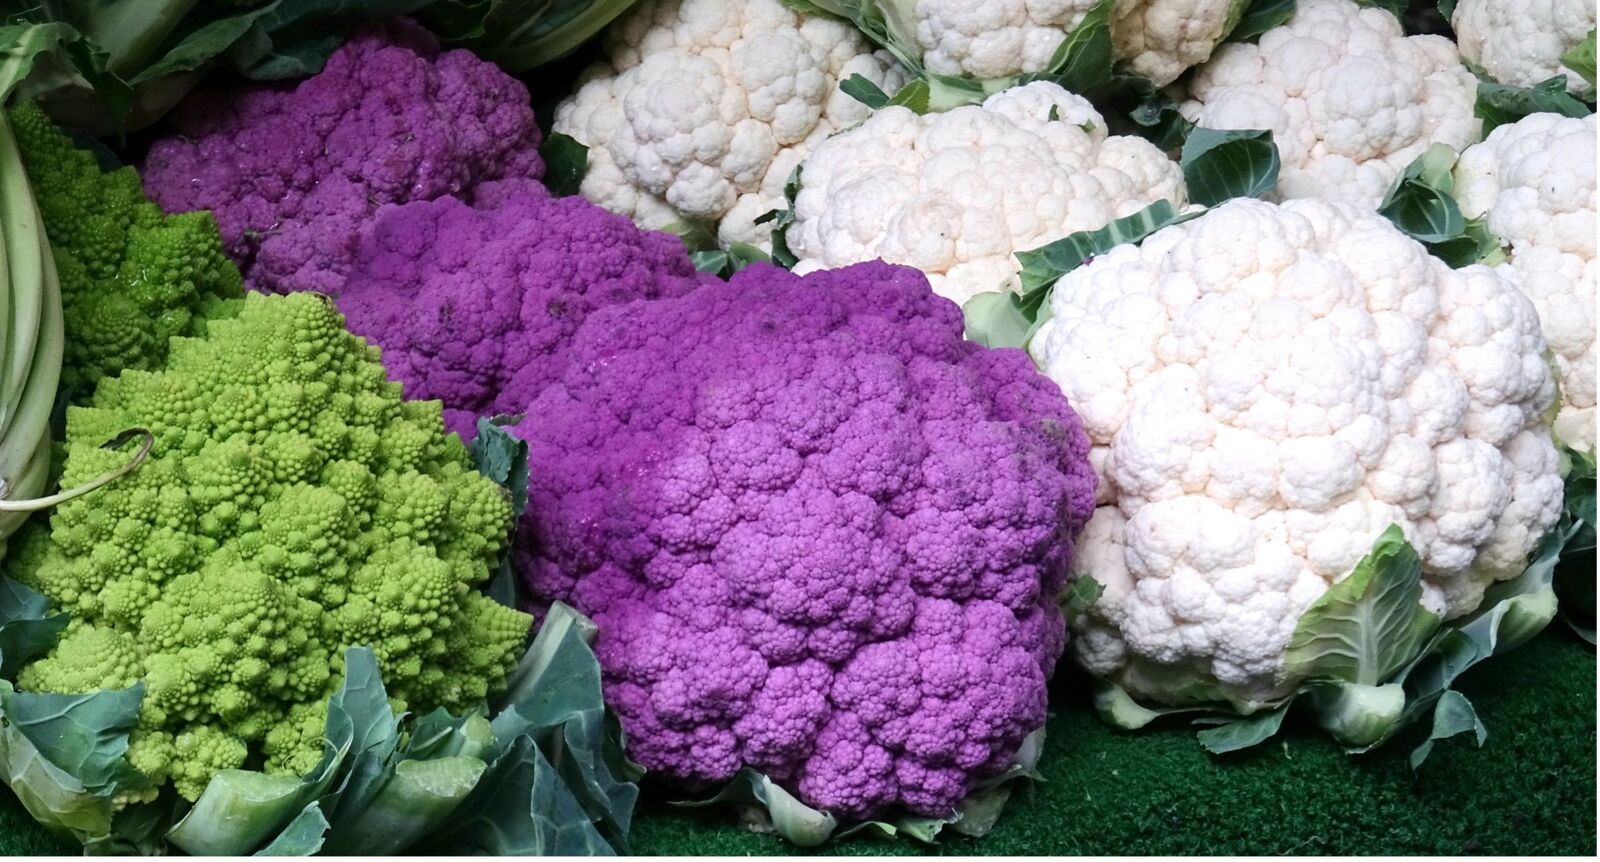 White, green and purple cauliflower varieties